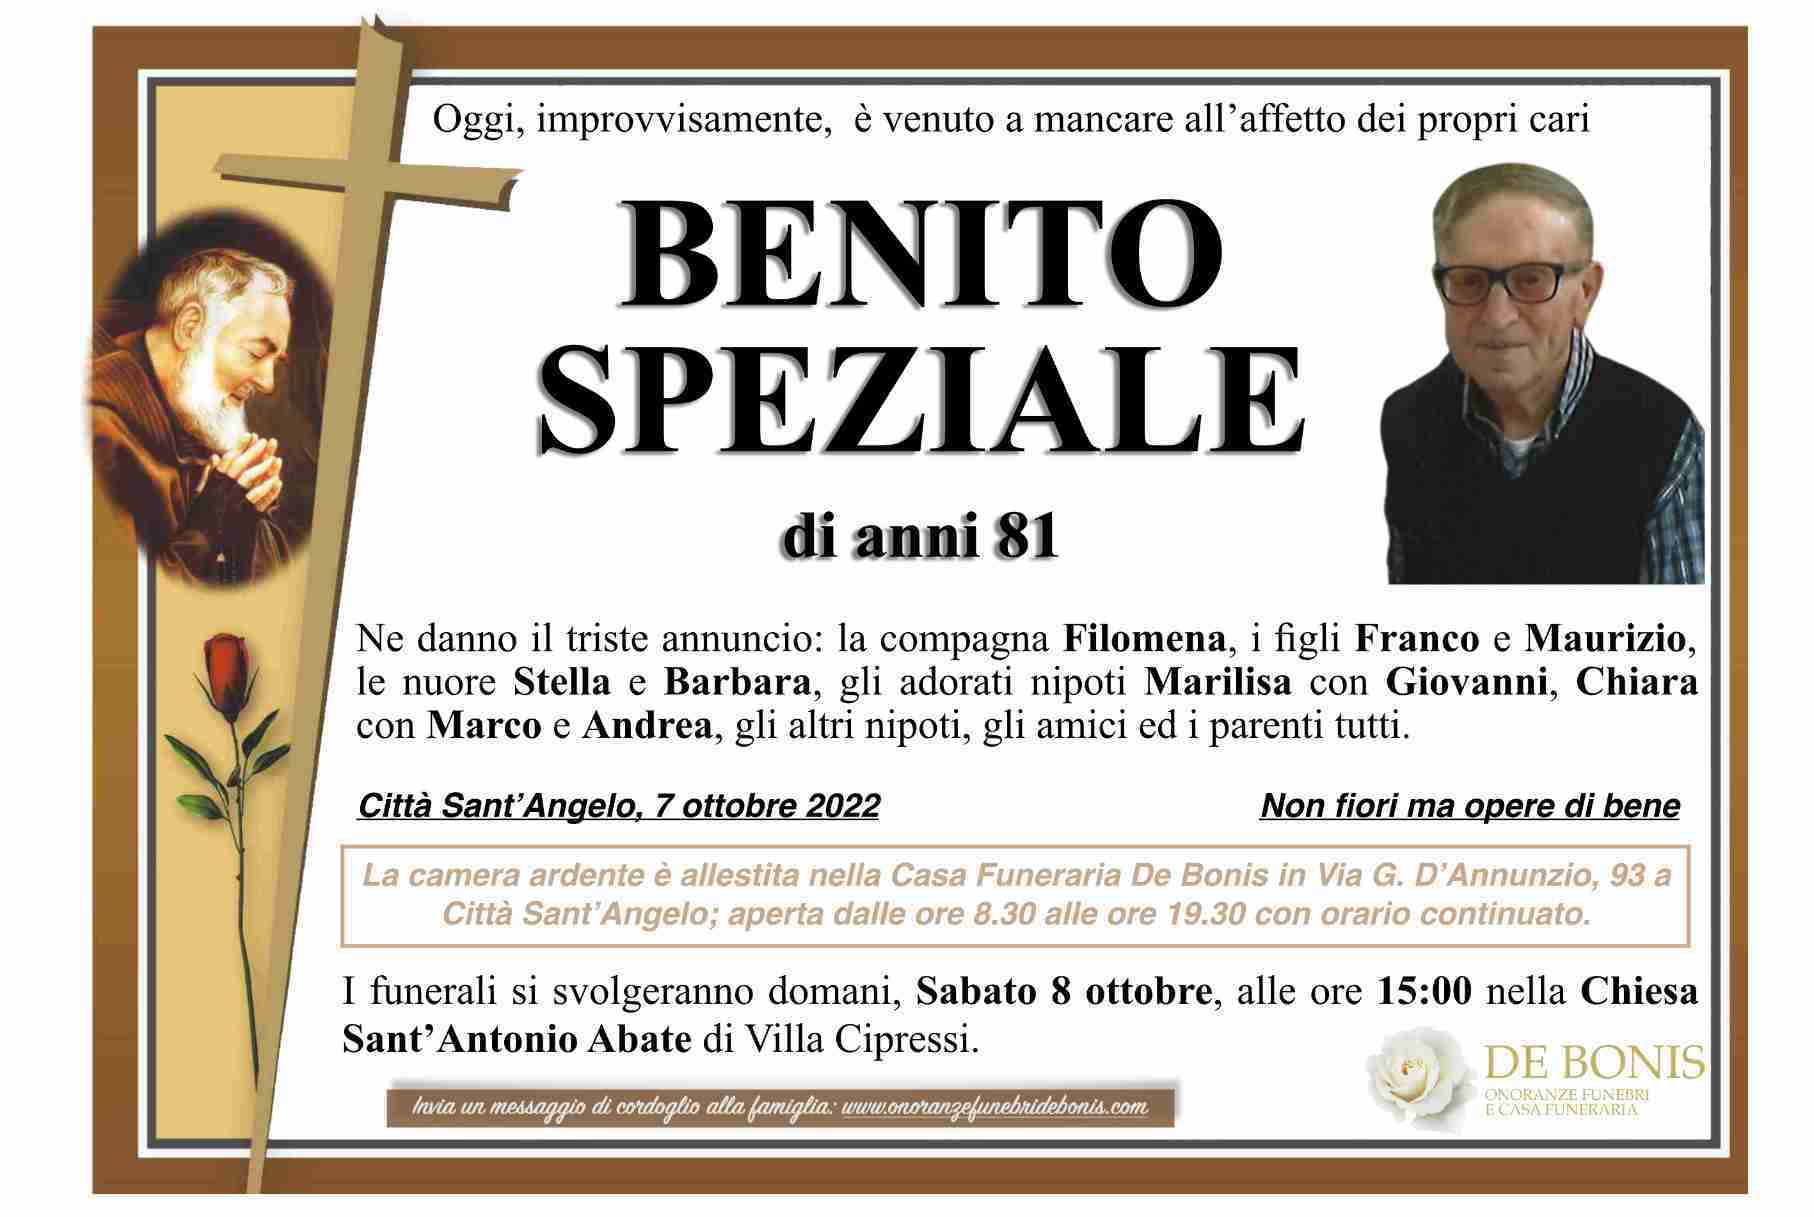 Benito Speziale